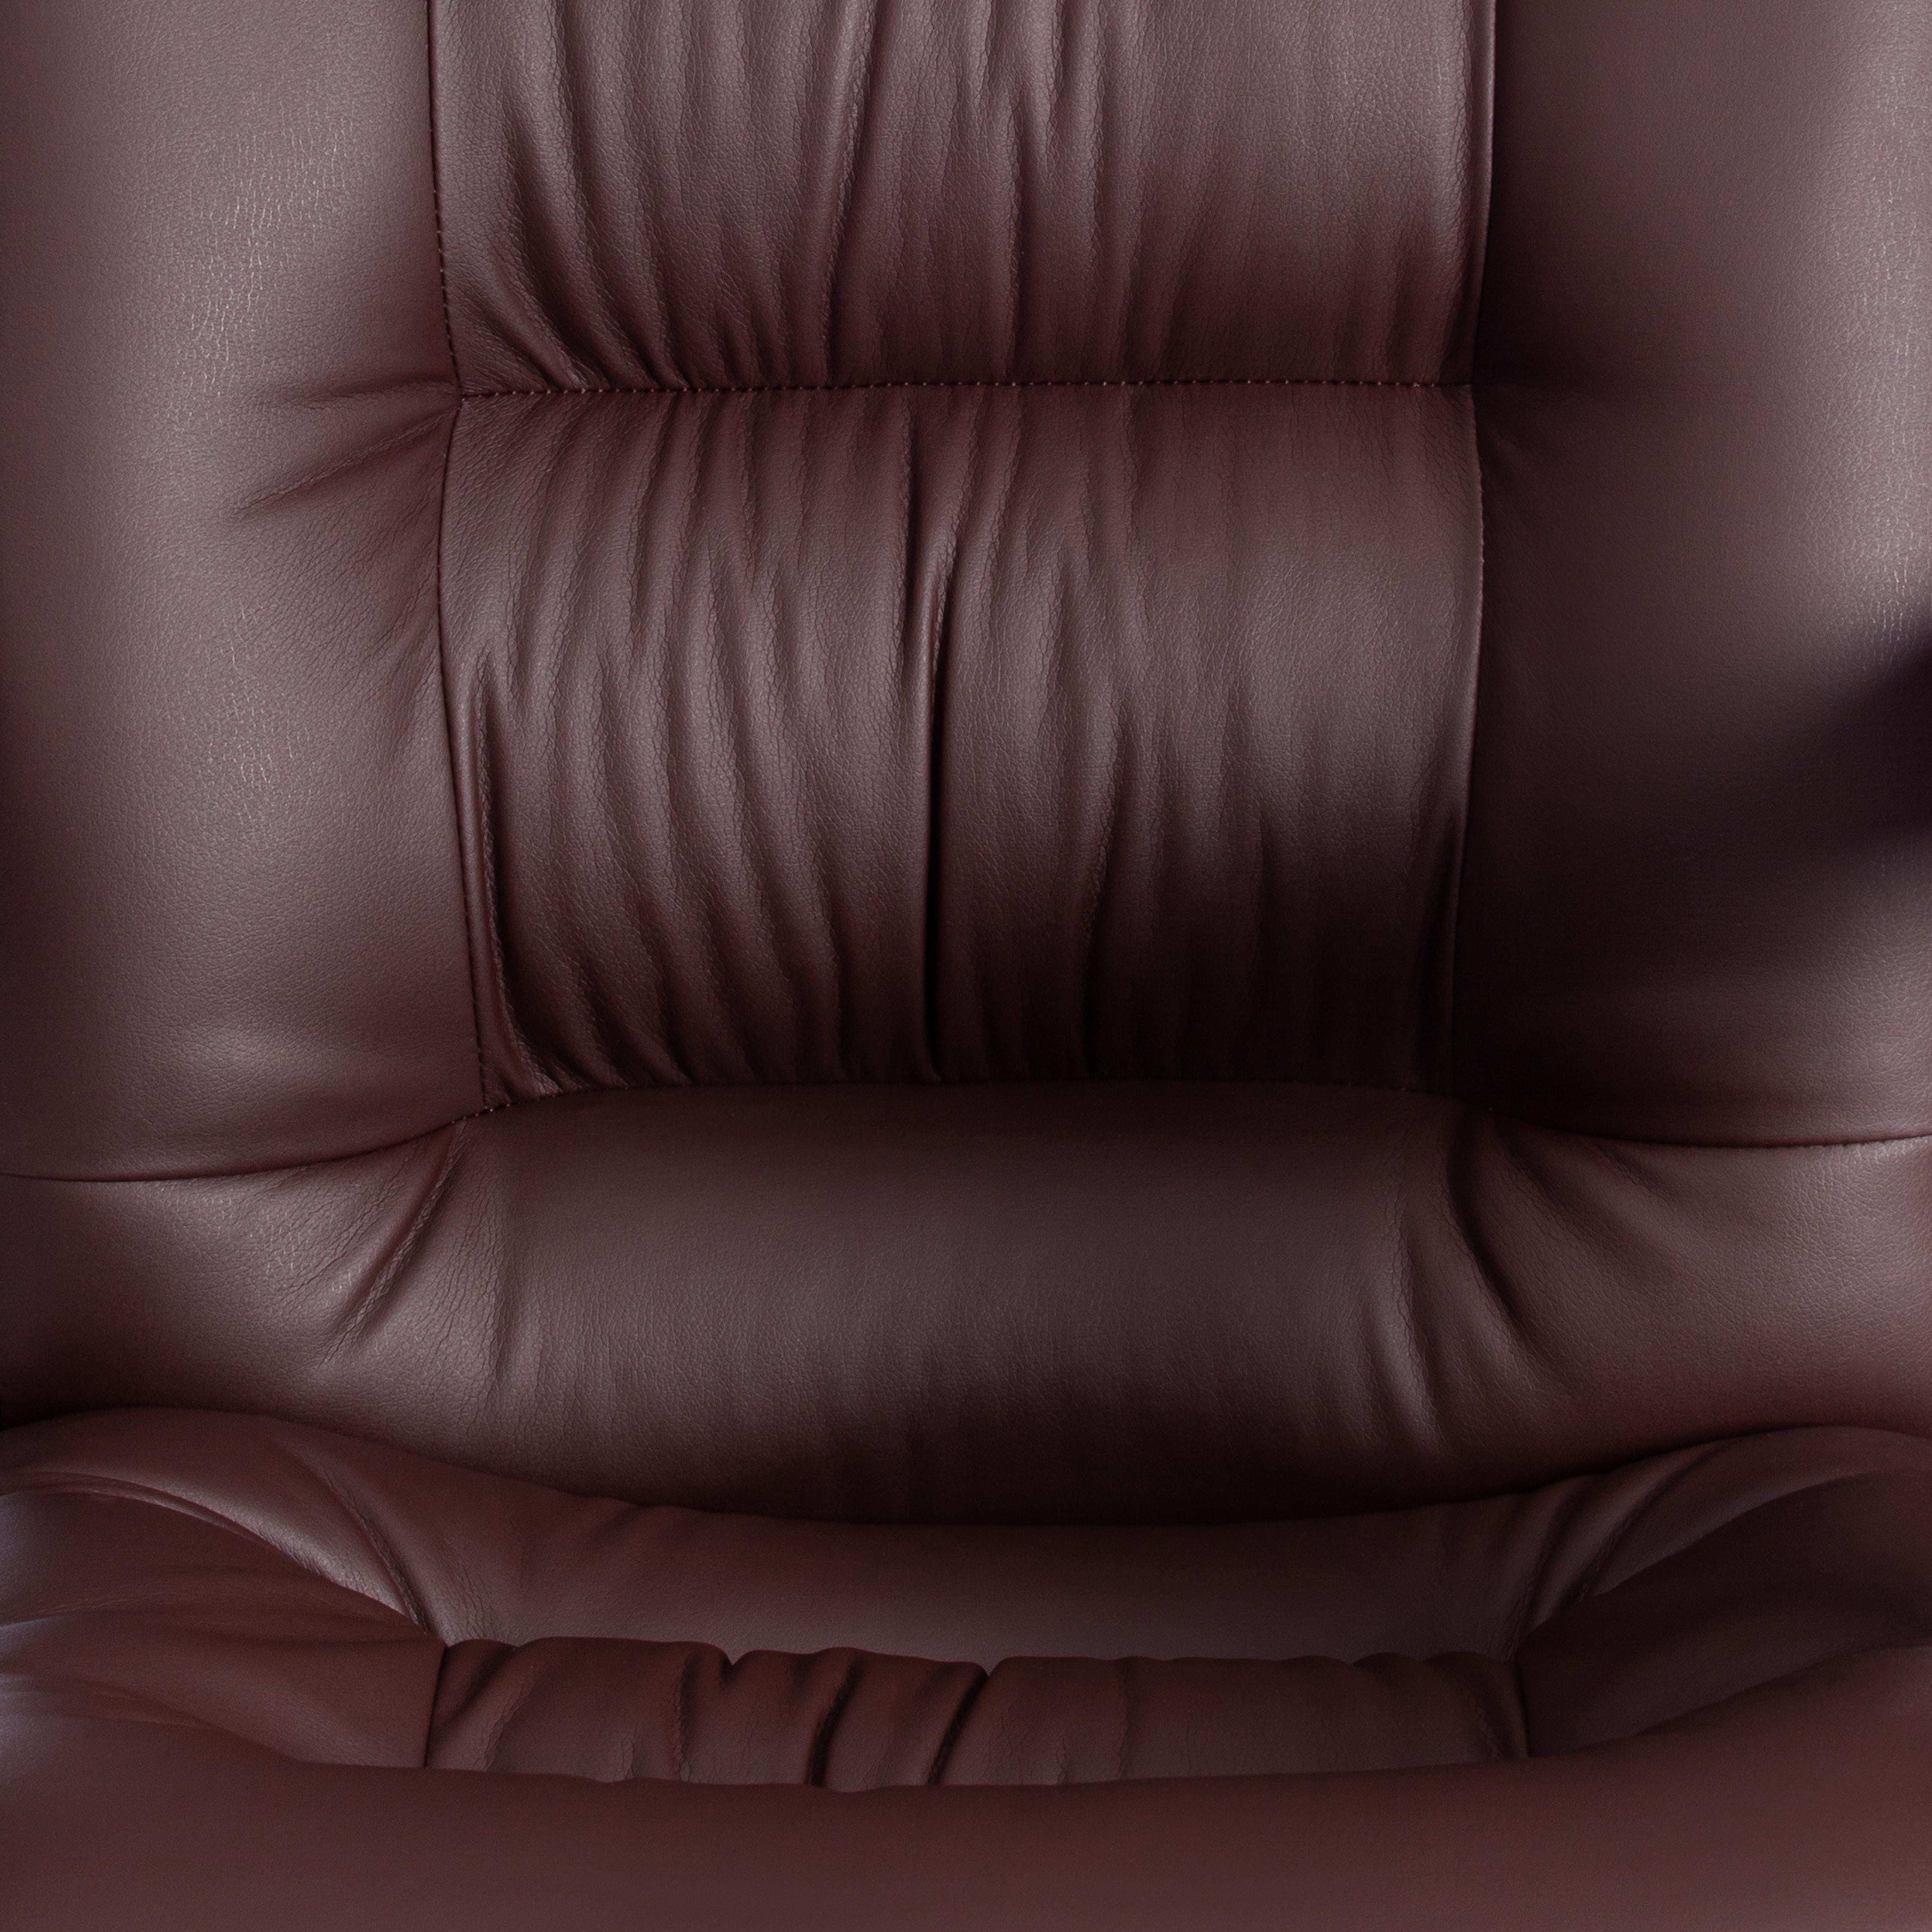 Кресло СН9944 (22) хром кож/зам, коричневый, 36-36